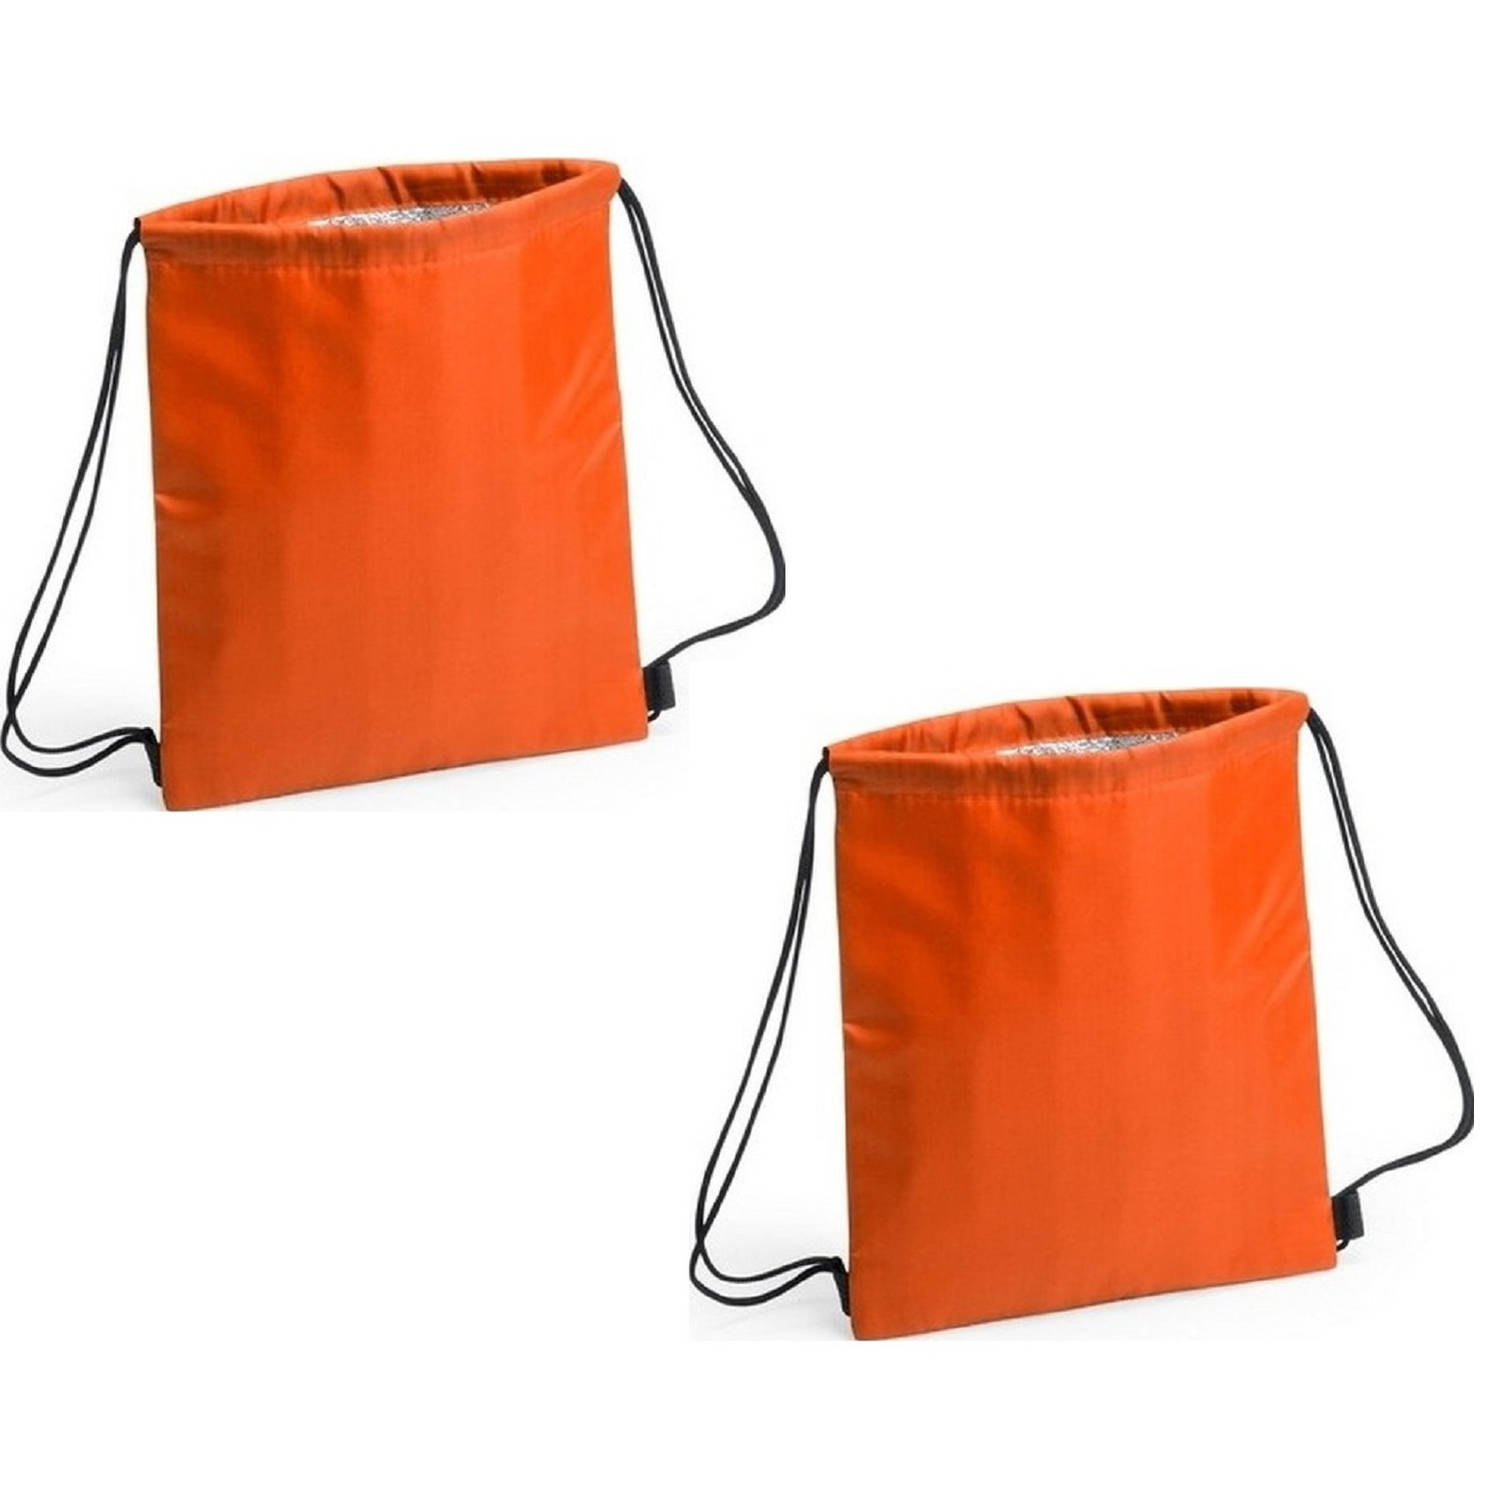 Set van 2x stuks oranje koeltas rugzak/gymtas 27 x 33 cm met drawstring/rijgkoord - Koeltas